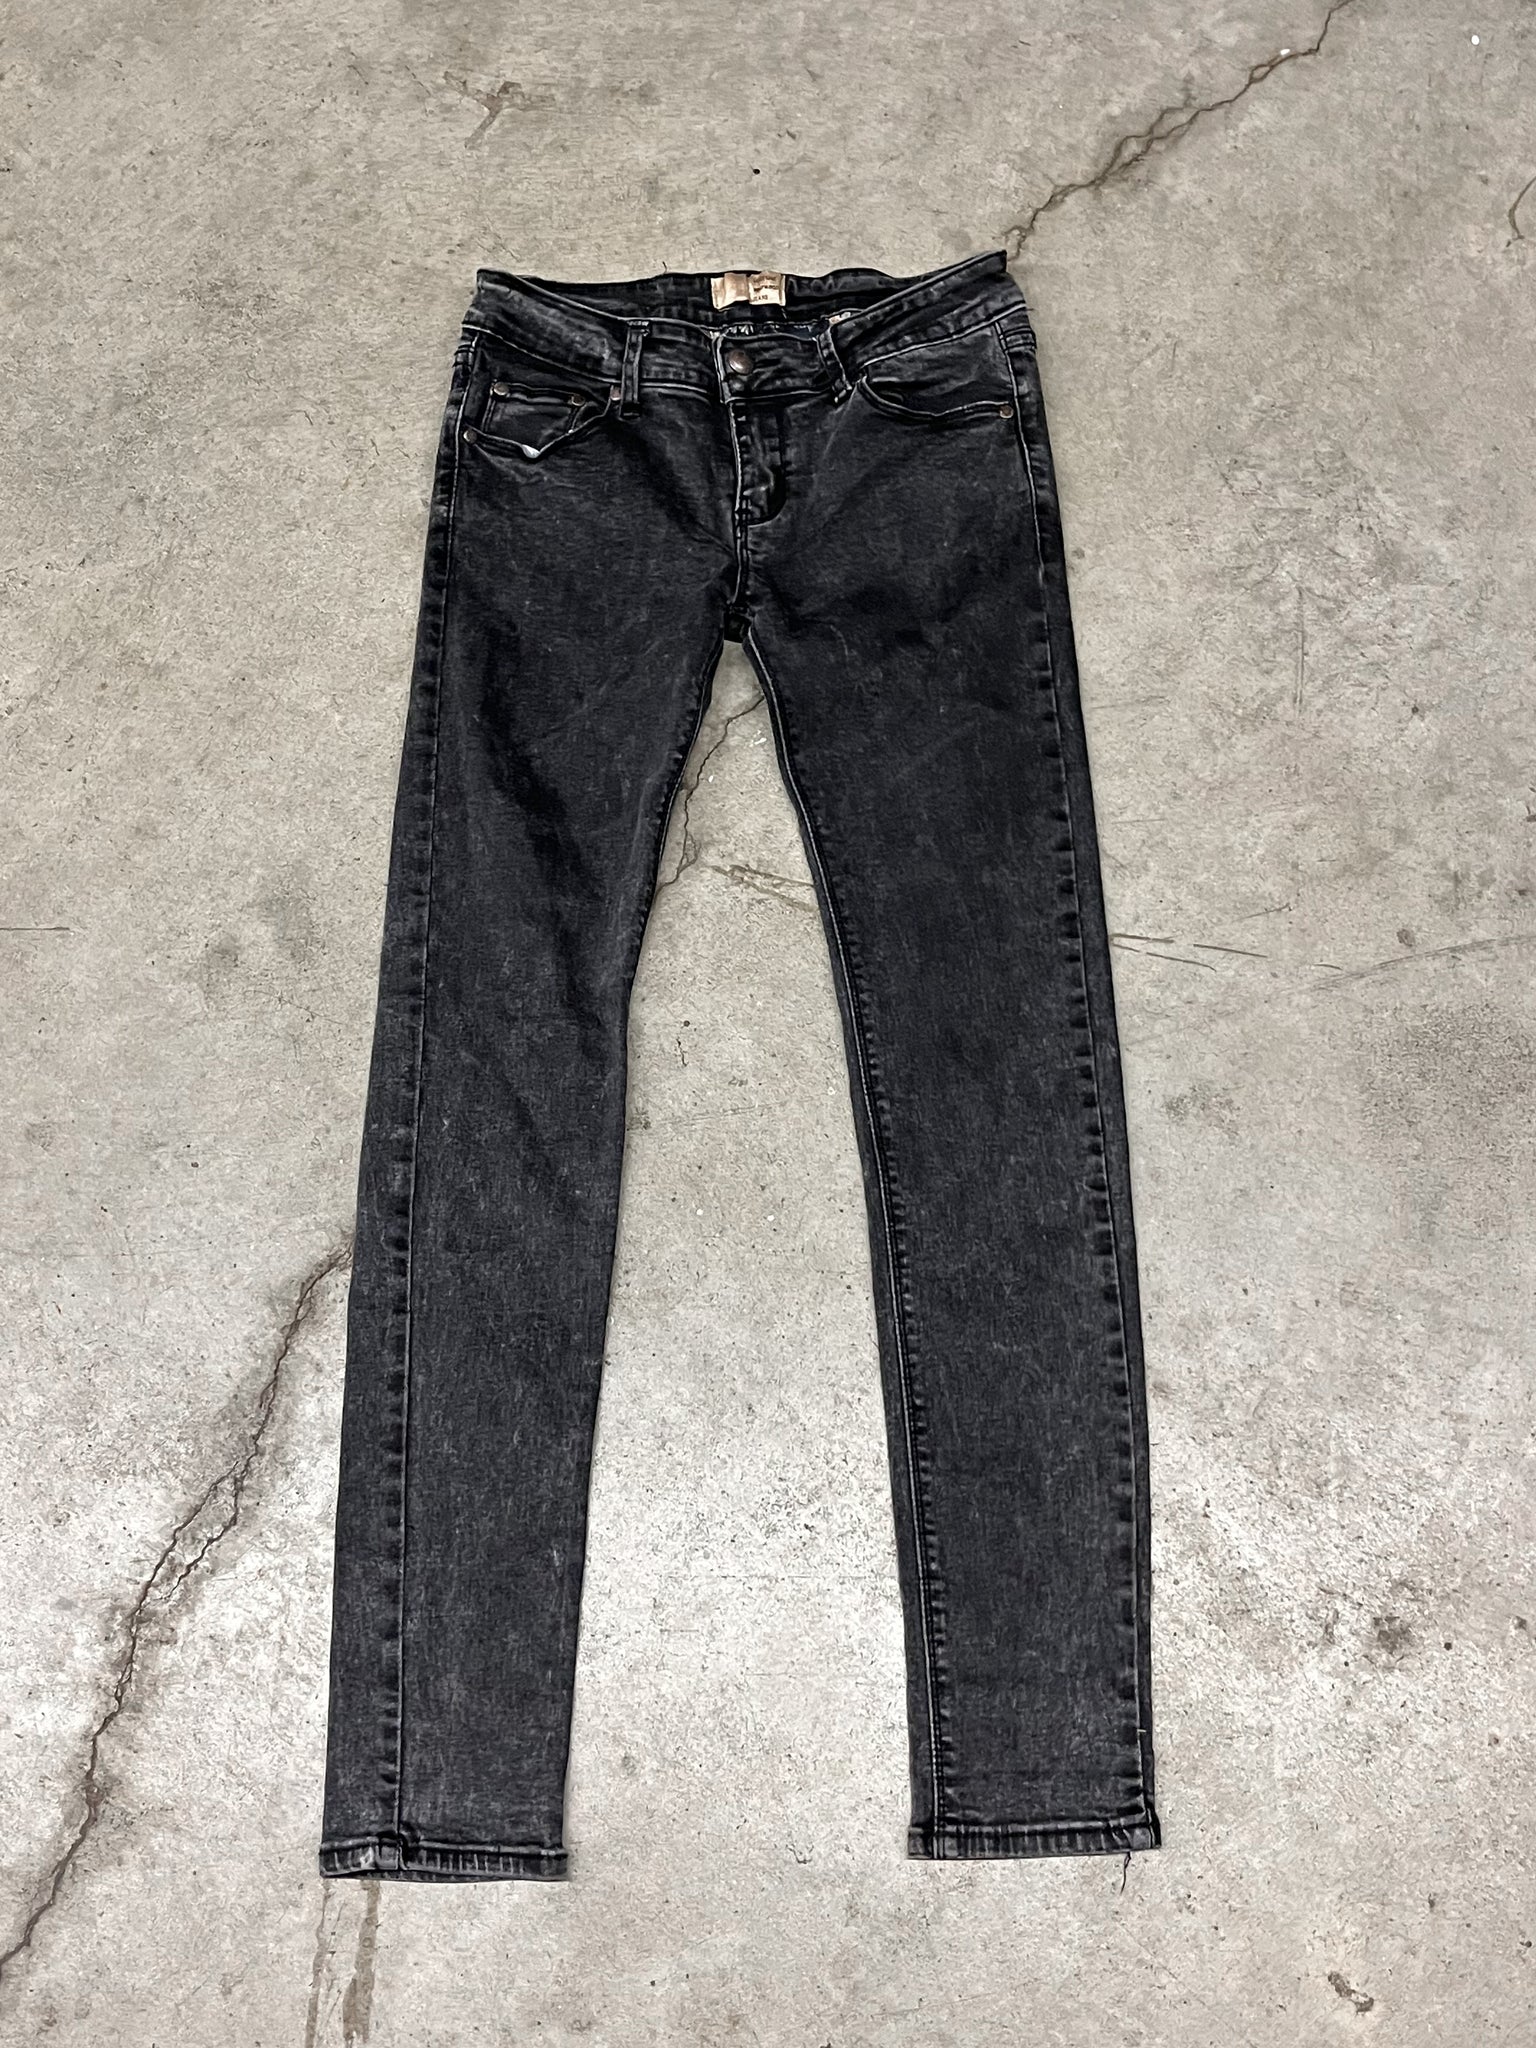 Vivienne Westwood Skinny Jeans / 29x30